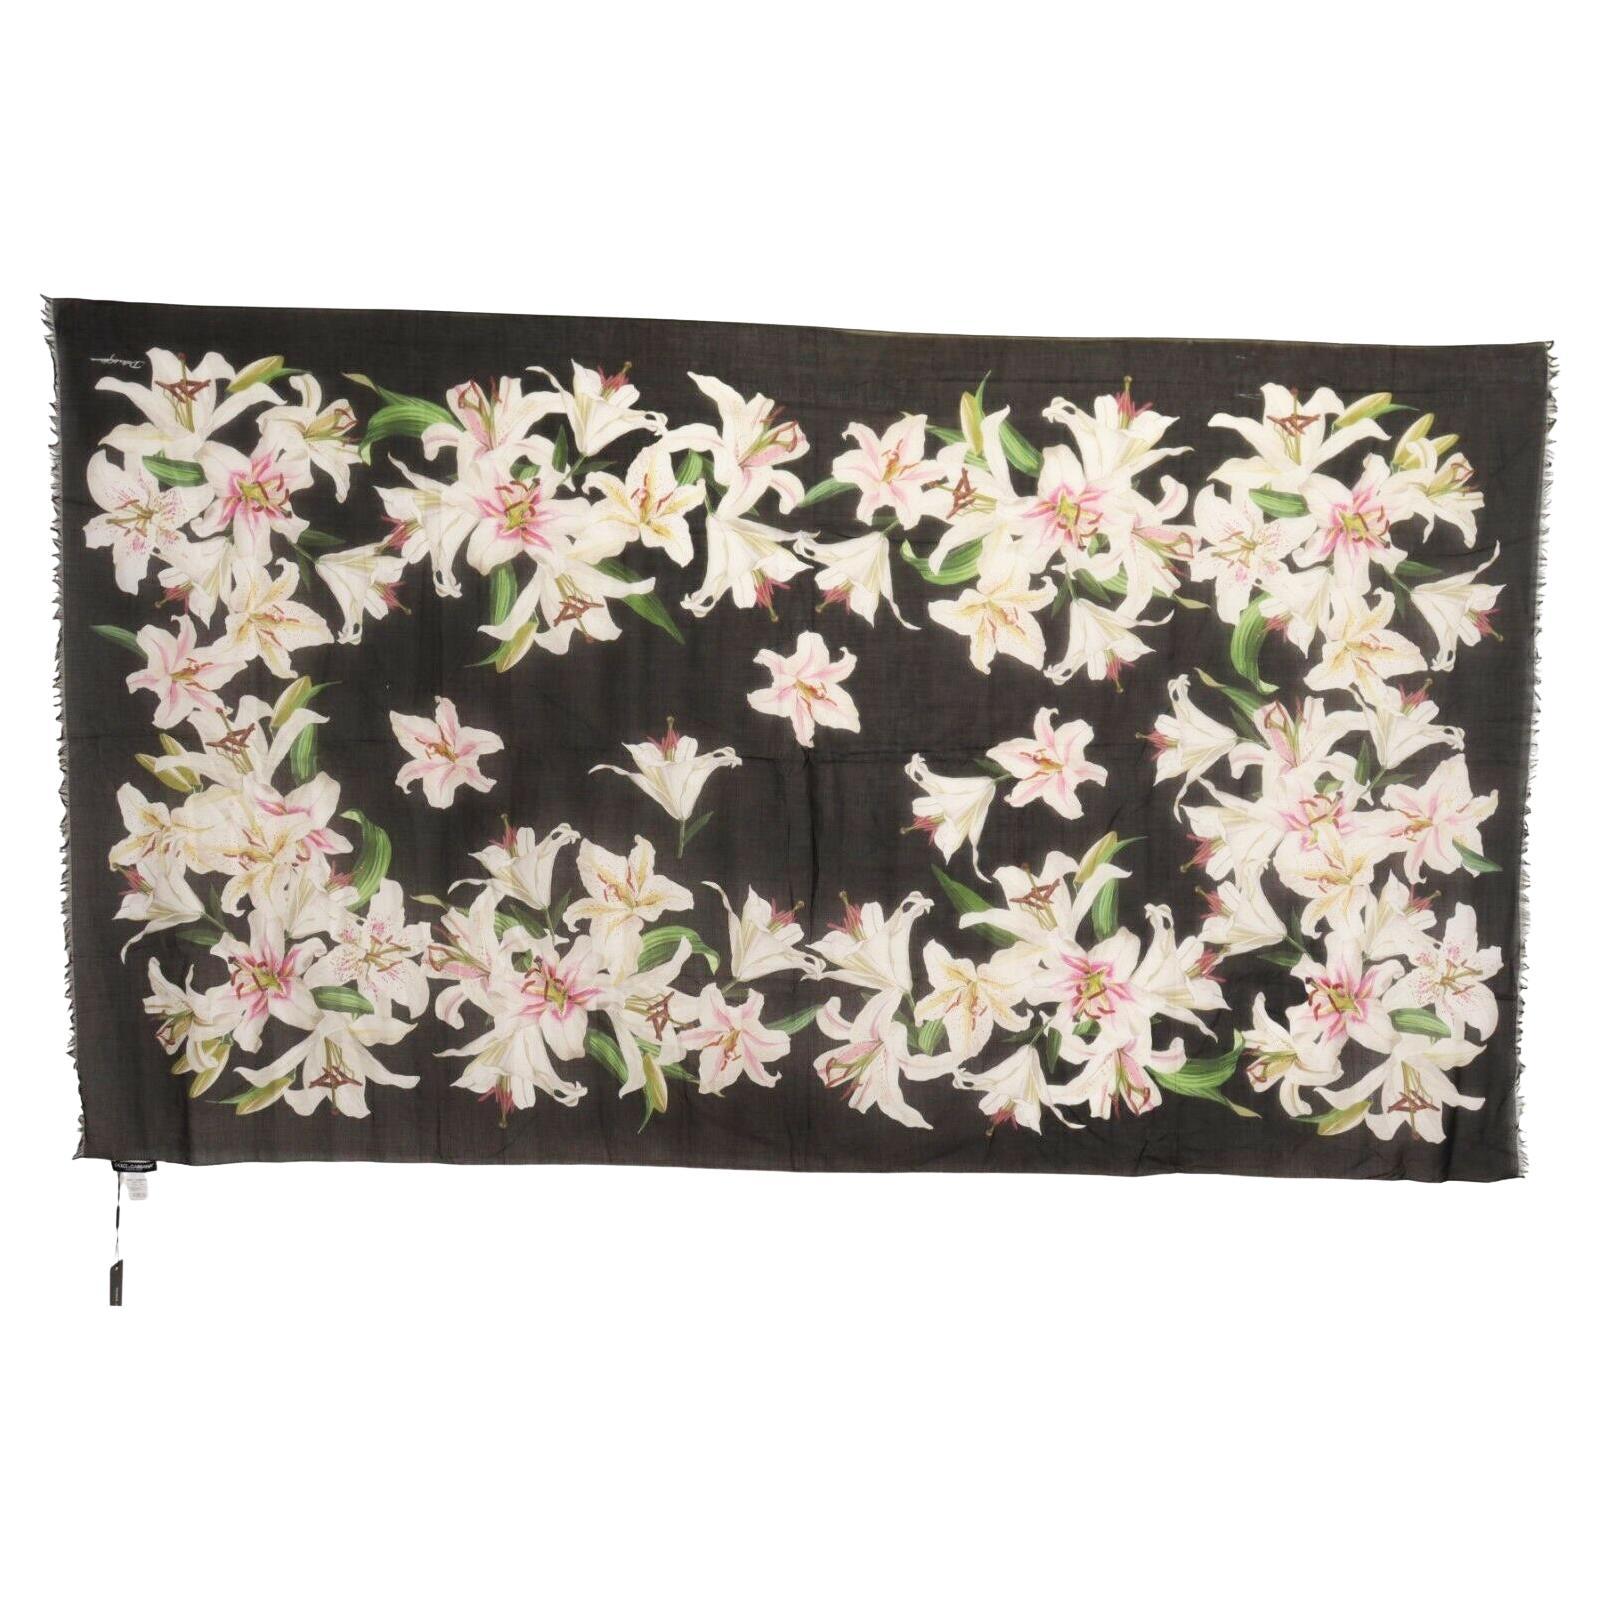 Dolce & Gabbana Black White Cotton Lily Floral Scarf Wrap Beachwear Pareo Women